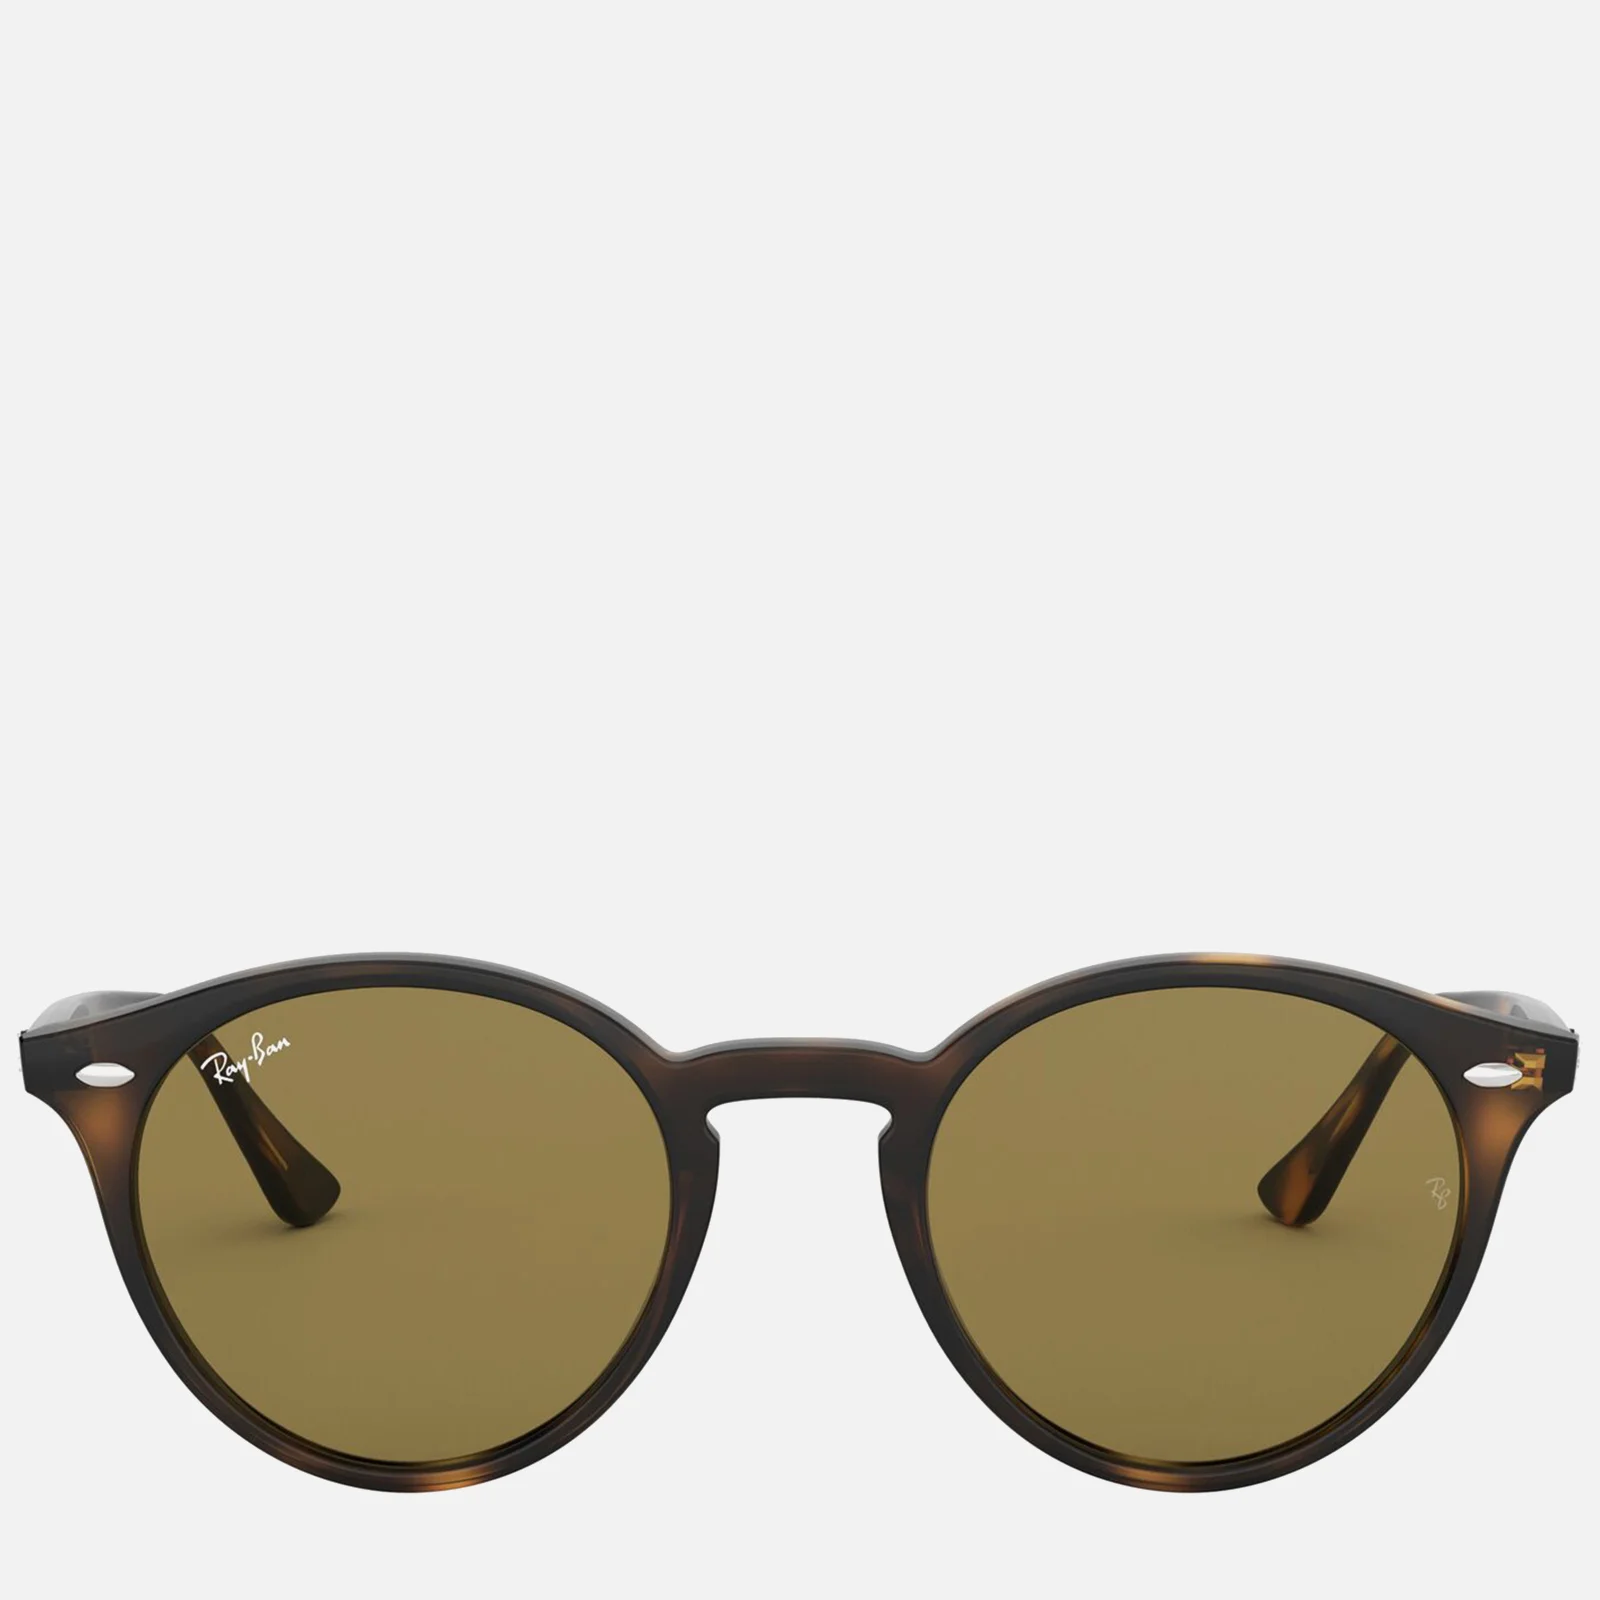 Ray-Ban Round Acetate Tortoiseshell Sunglasses - Brown Image 1